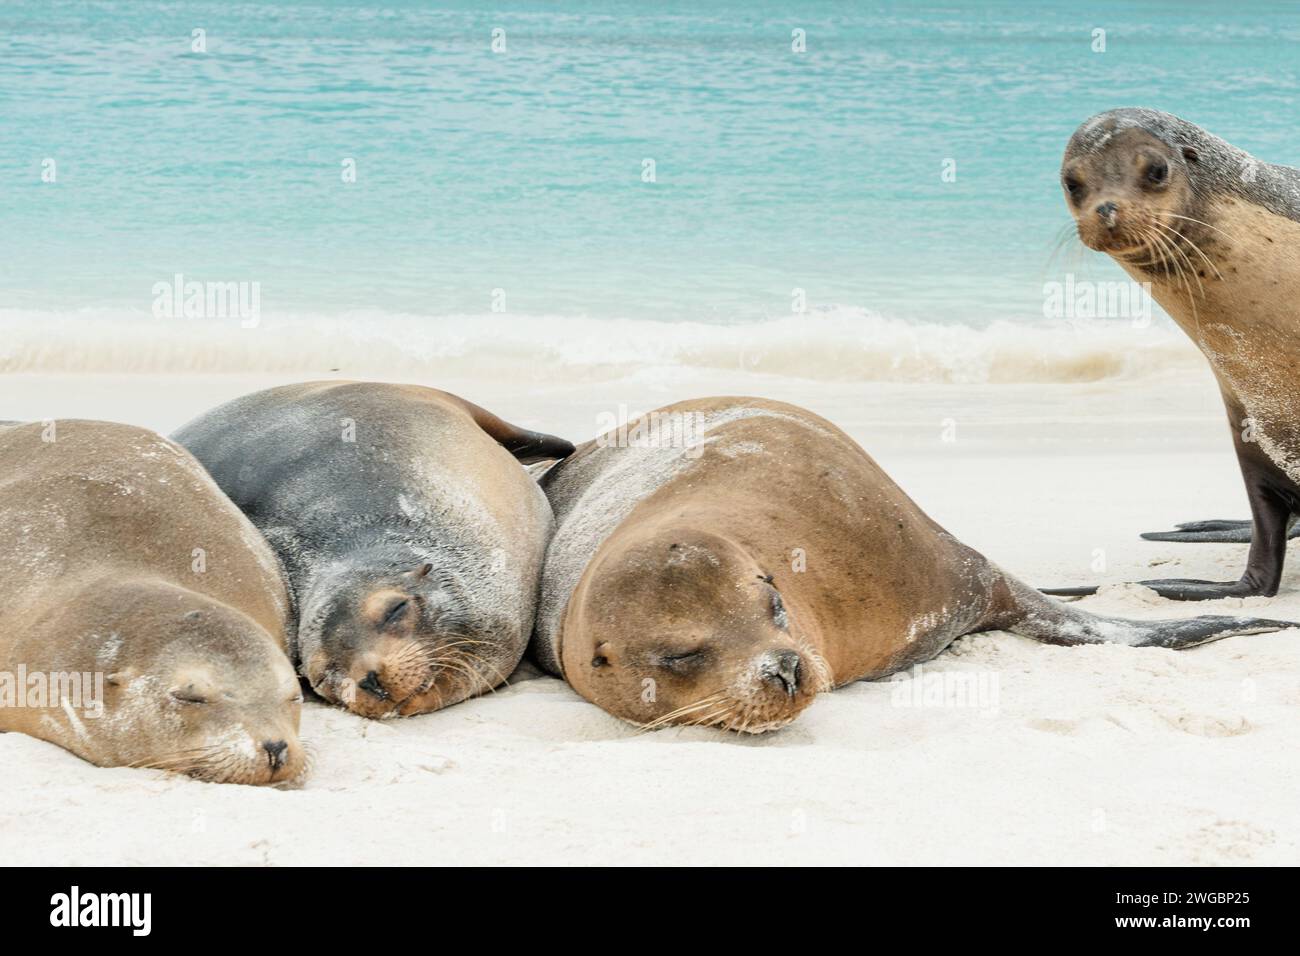 Wach auf! Neugierig lustiger Seelöwen krachen auf dem Foto von 3 schlafenden Seelöwen im pazifik von galapagos Stockfoto